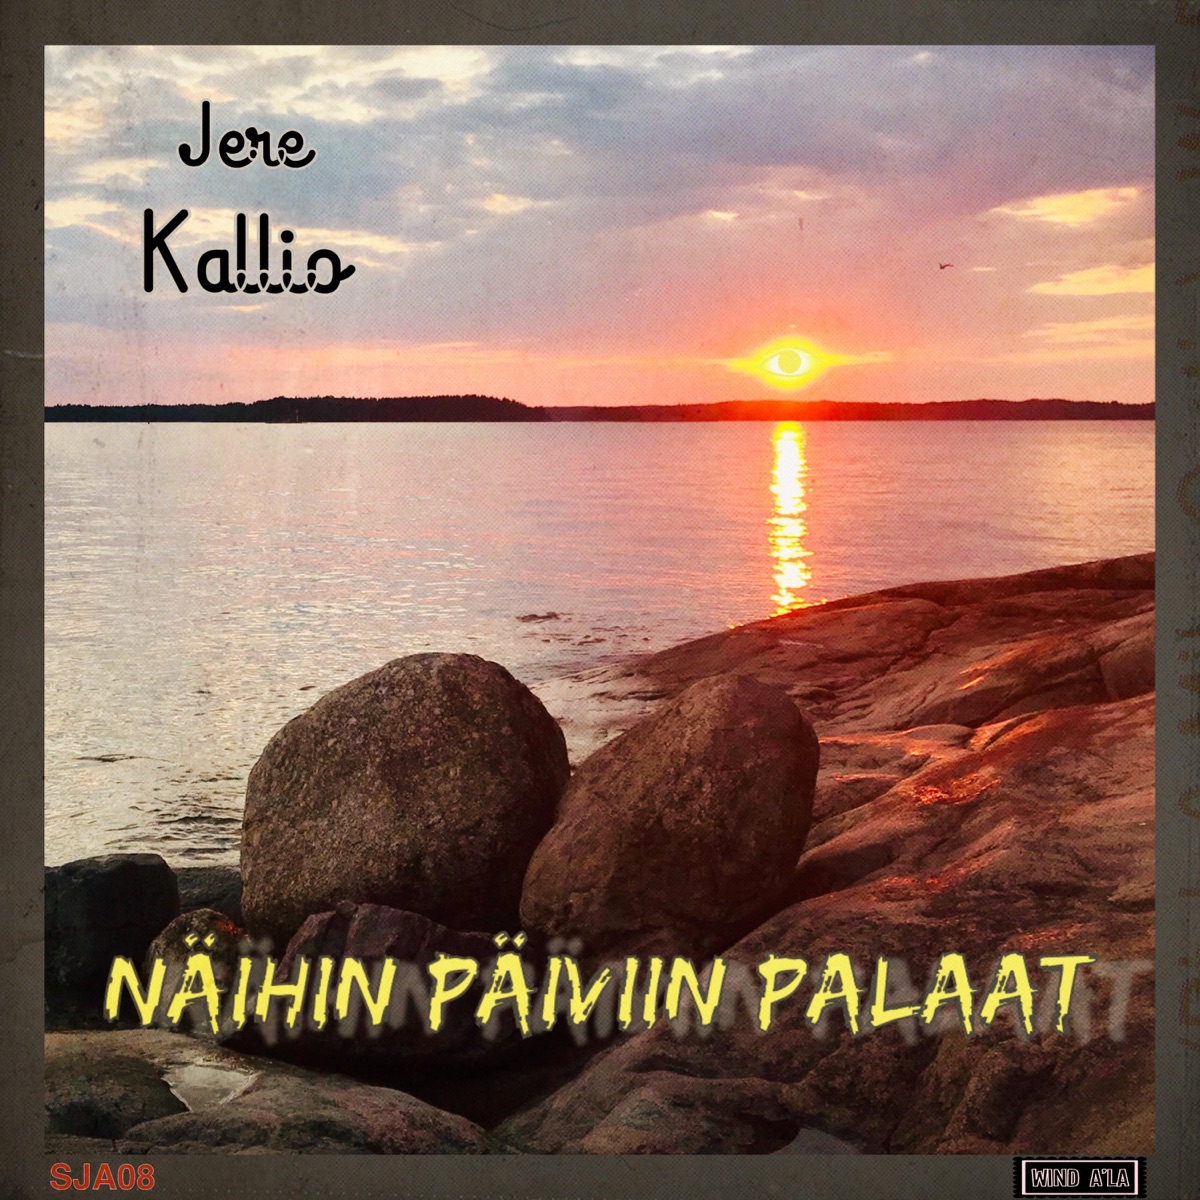 Damokleen Miekka - Single - Album by Jere Kallio - Apple Music